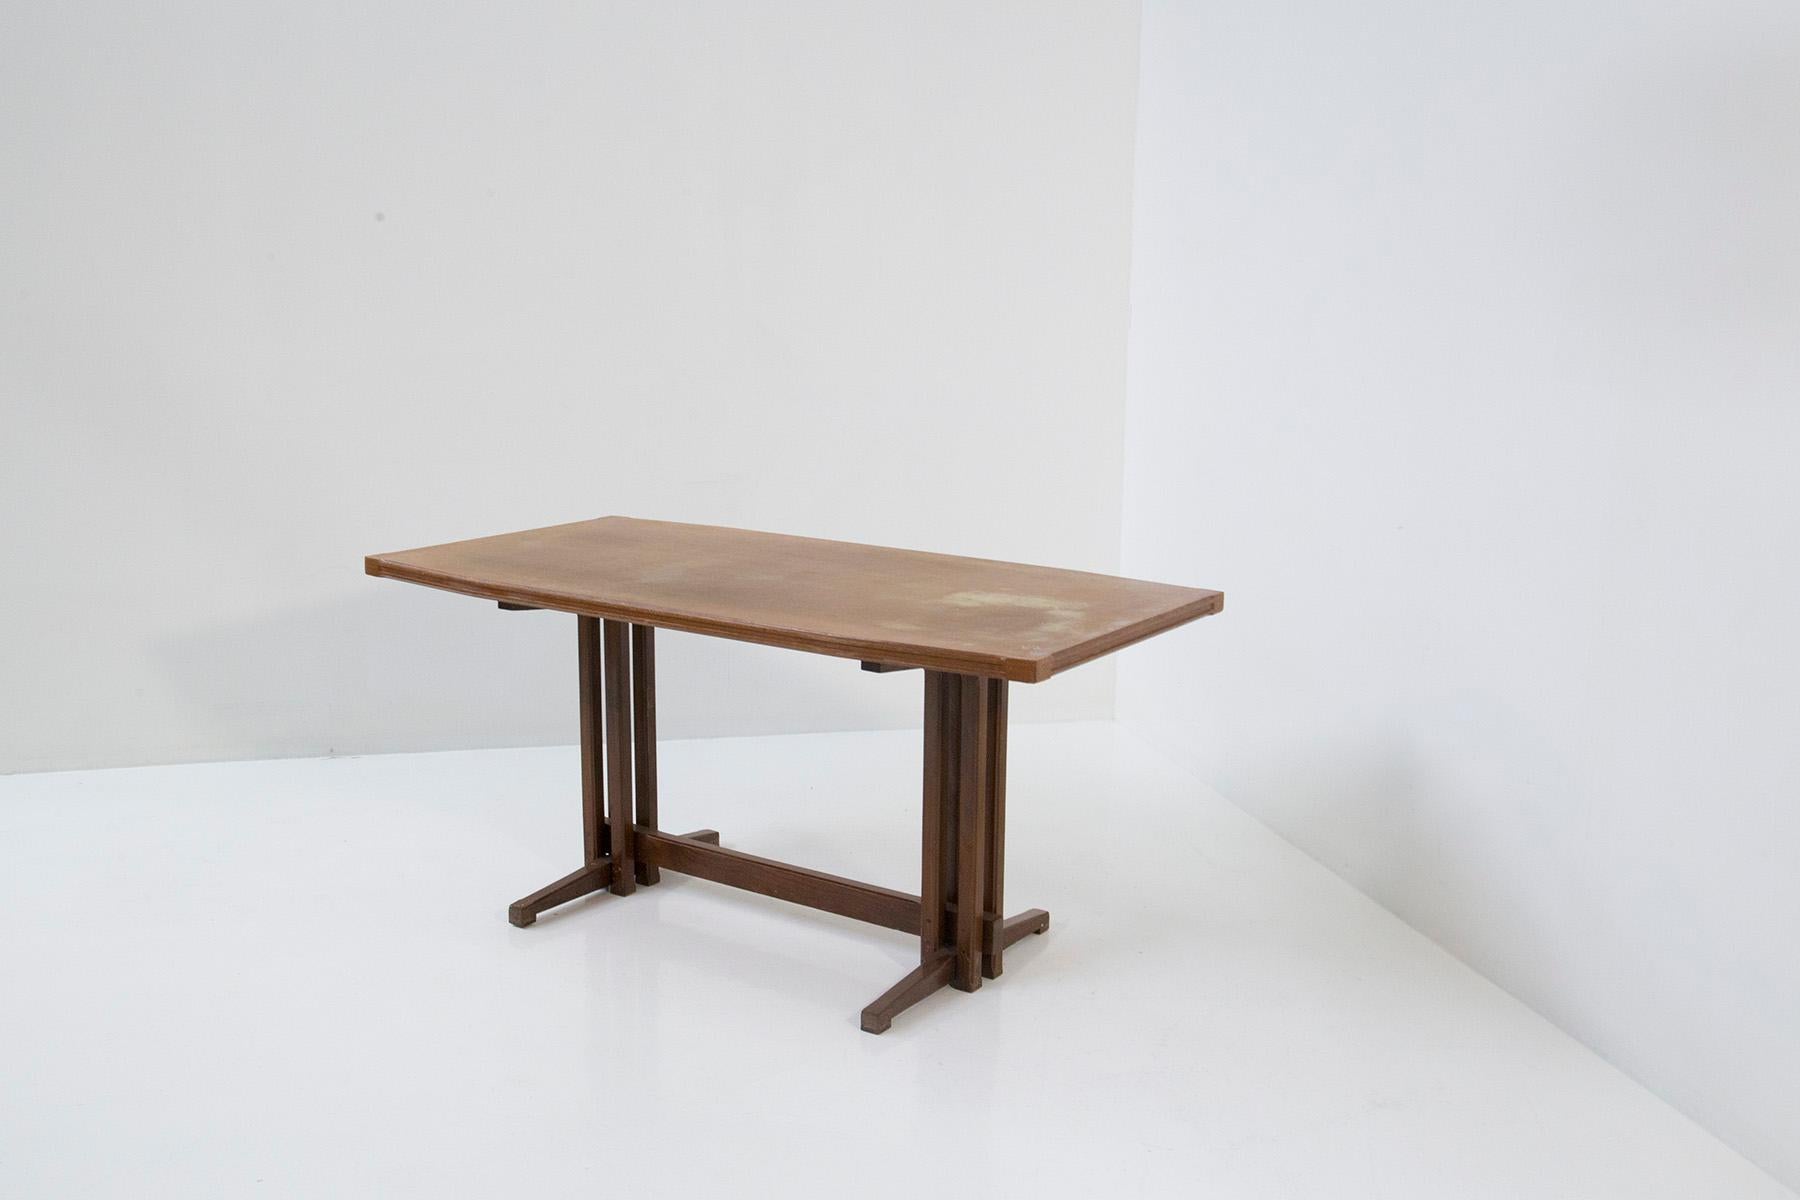 Dans le calme des années 1950, GiGI Radice a créé une table de salle à manger qui est devenue depuis un chef-d'œuvre intemporel : une symphonie de bois qui résonne avec l'âme d'un design essentiel. Contemplez une création où la forme danse avec la